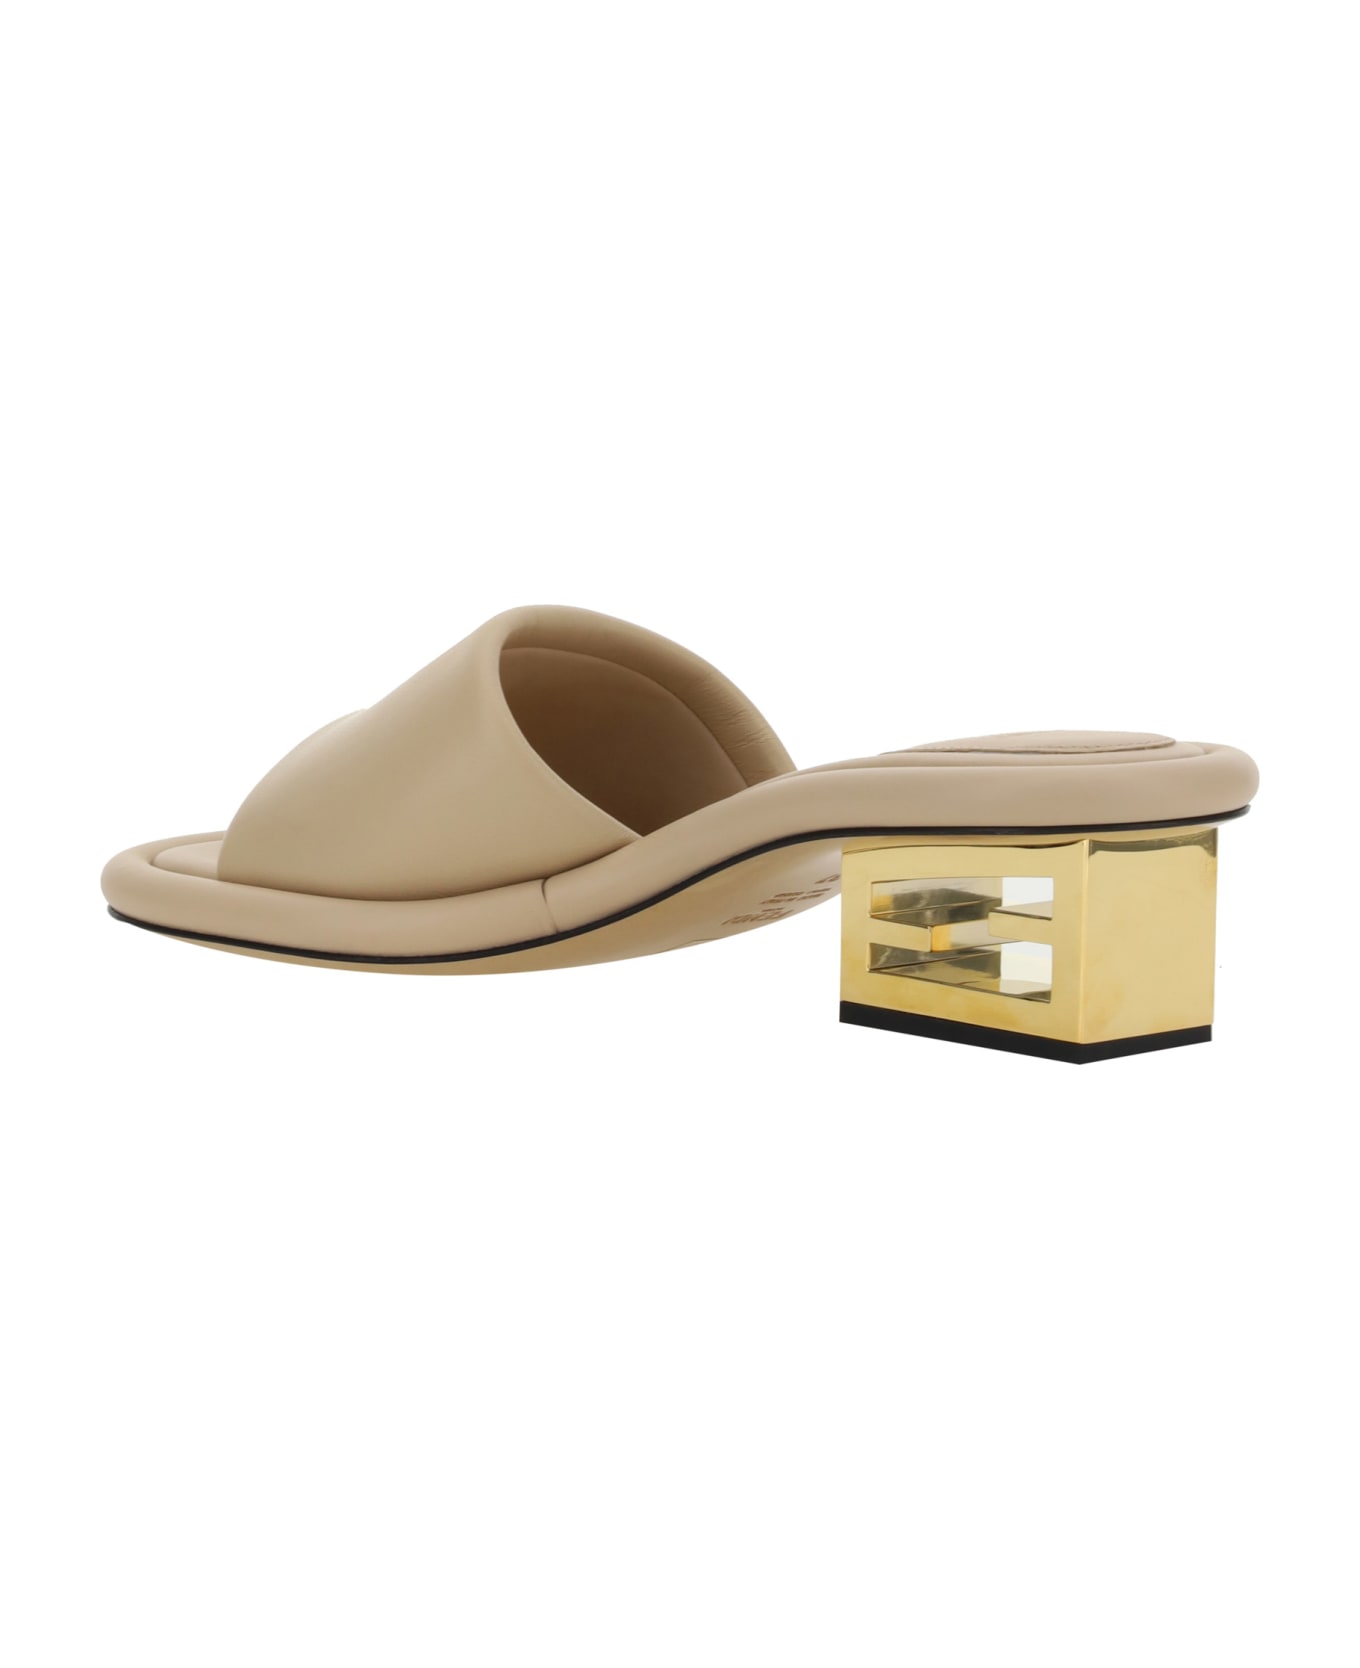 Fendi Baguette Nappa Leather Sandals - Buff サンダル